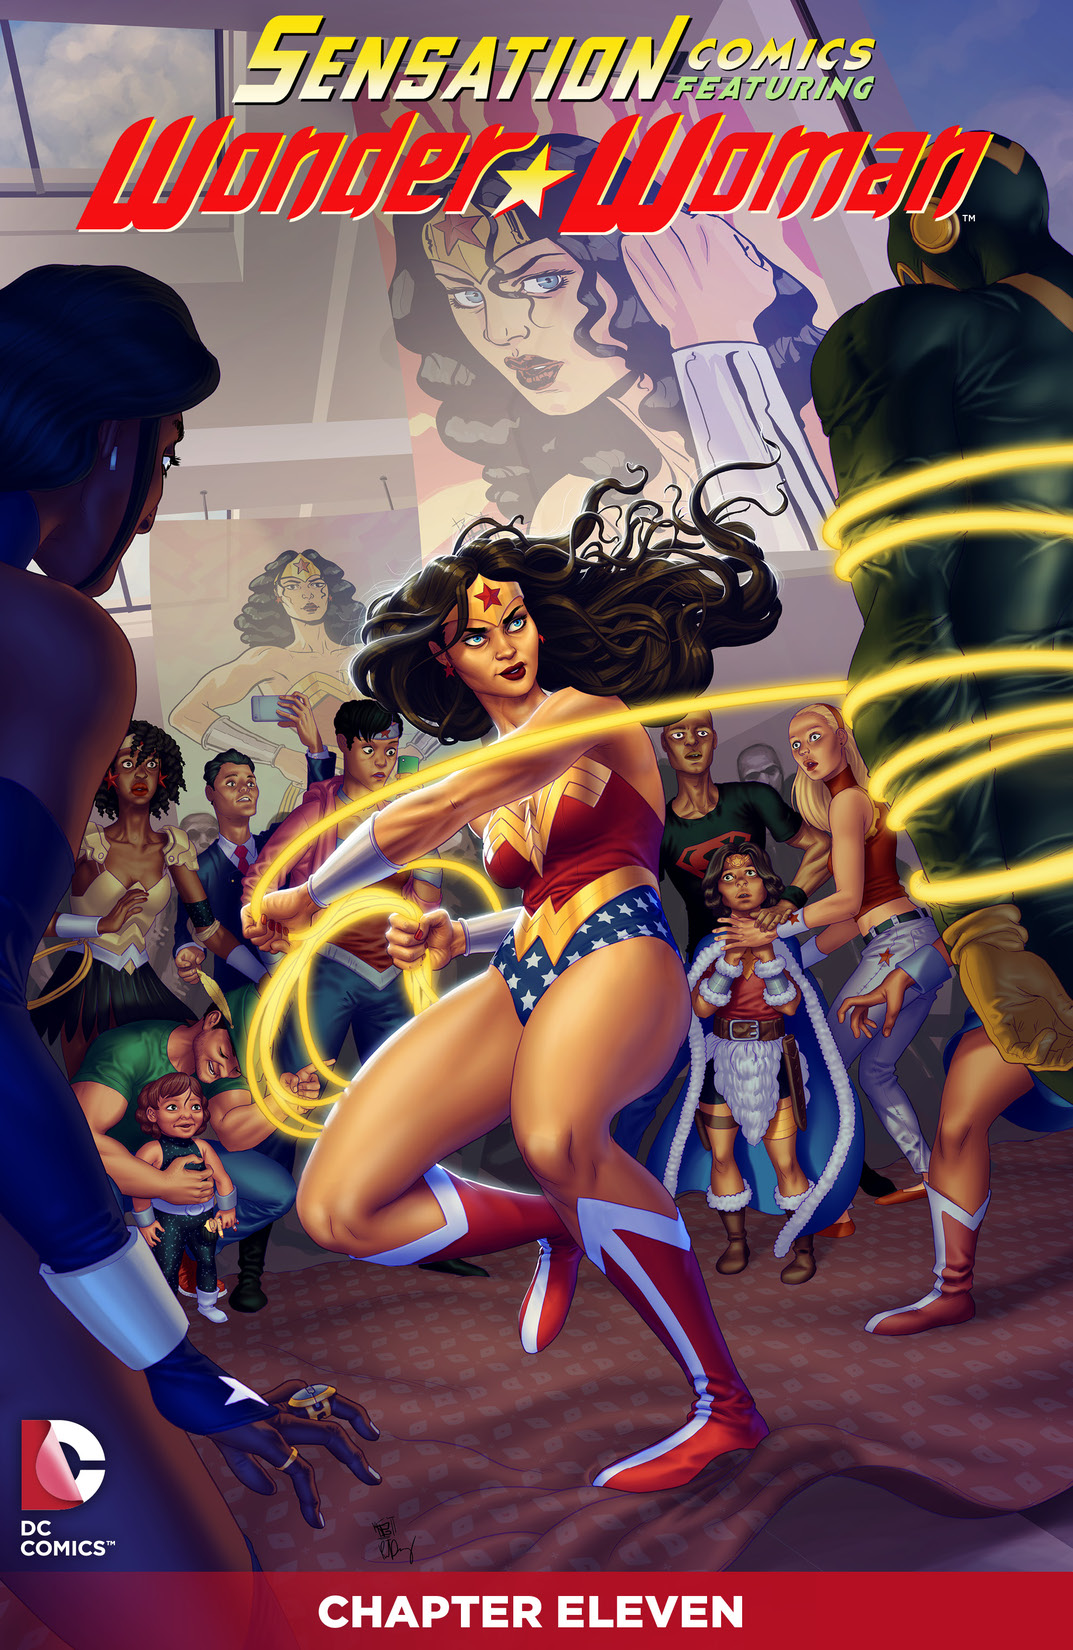 Sensation Comics Featuring Wonder Woman #11 preview images